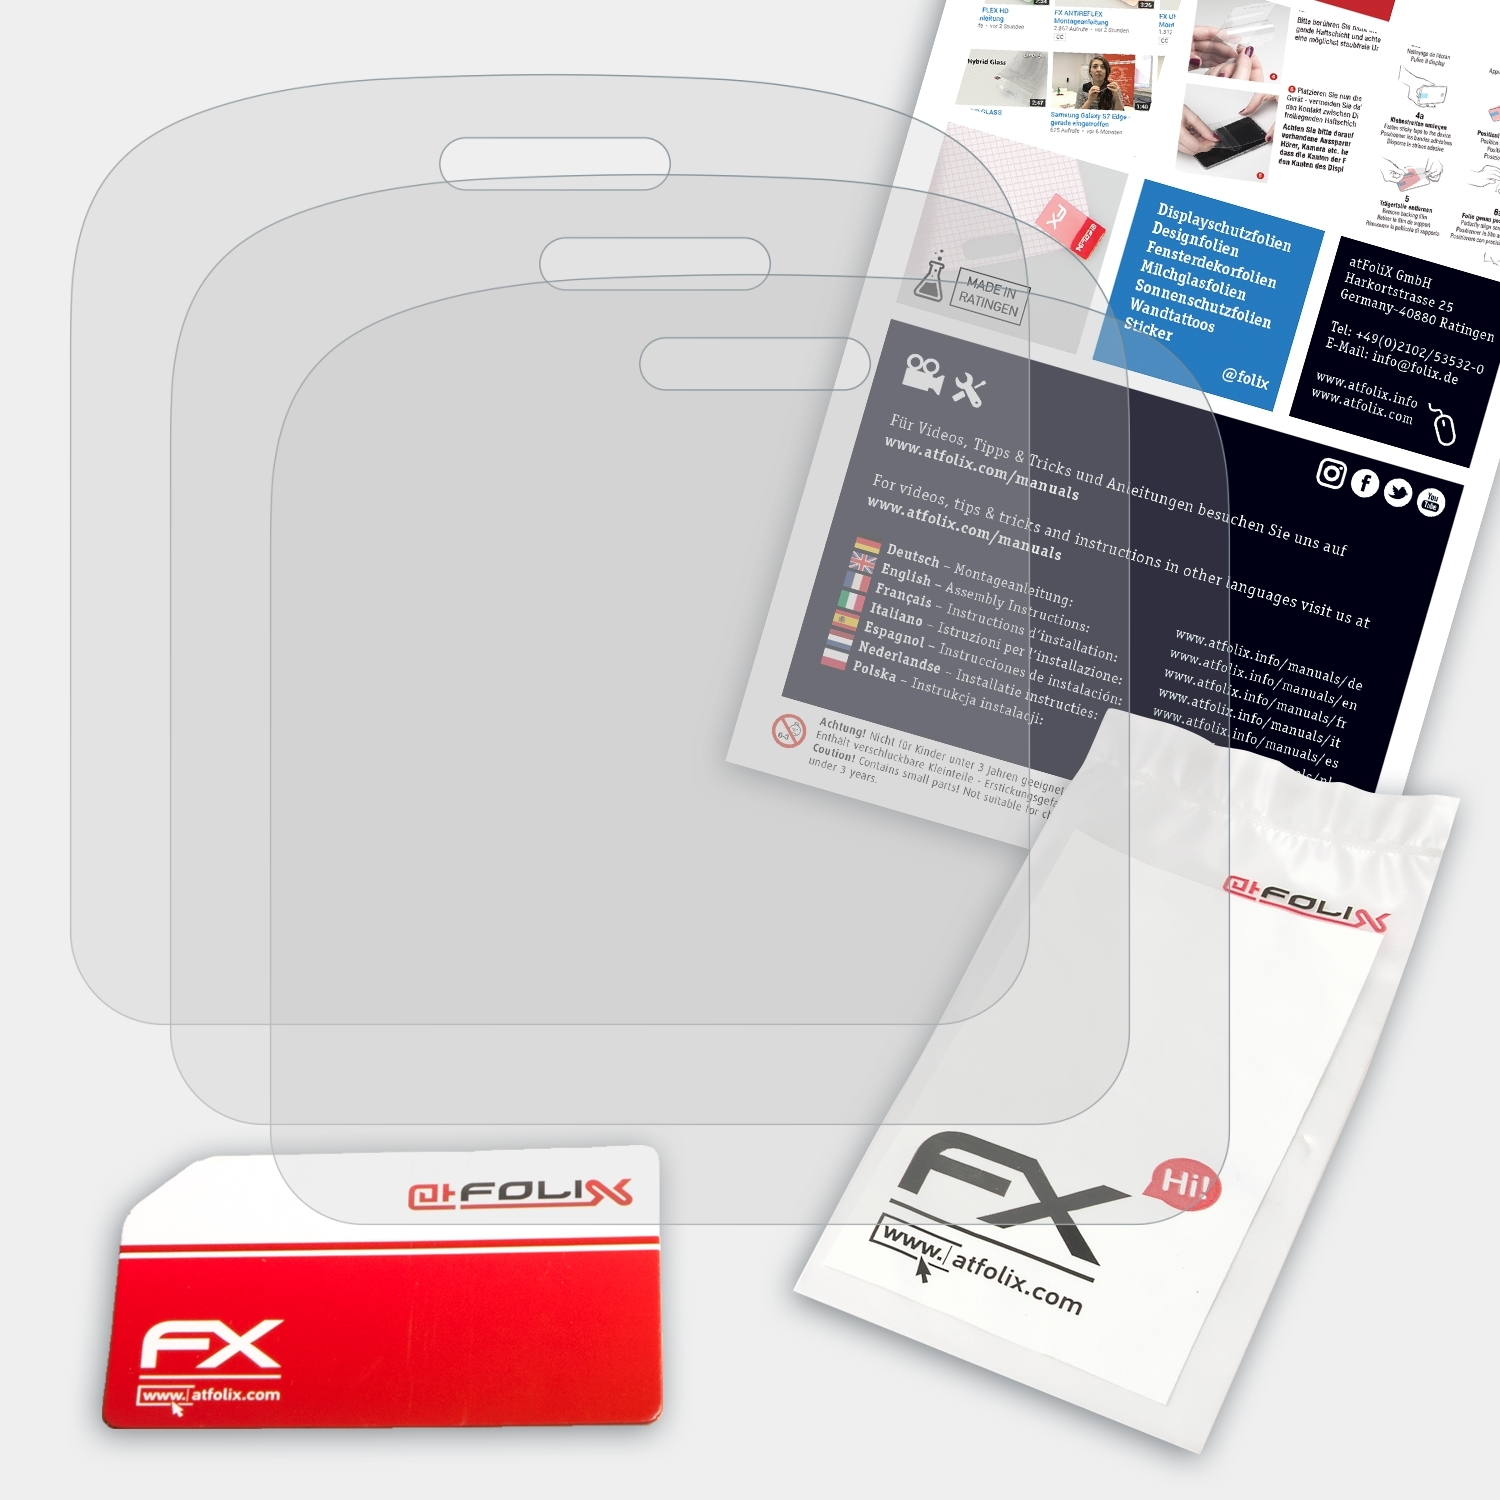 ATFOLIX 3x FX-Antireflex Displayschutz(für artfone CS181)